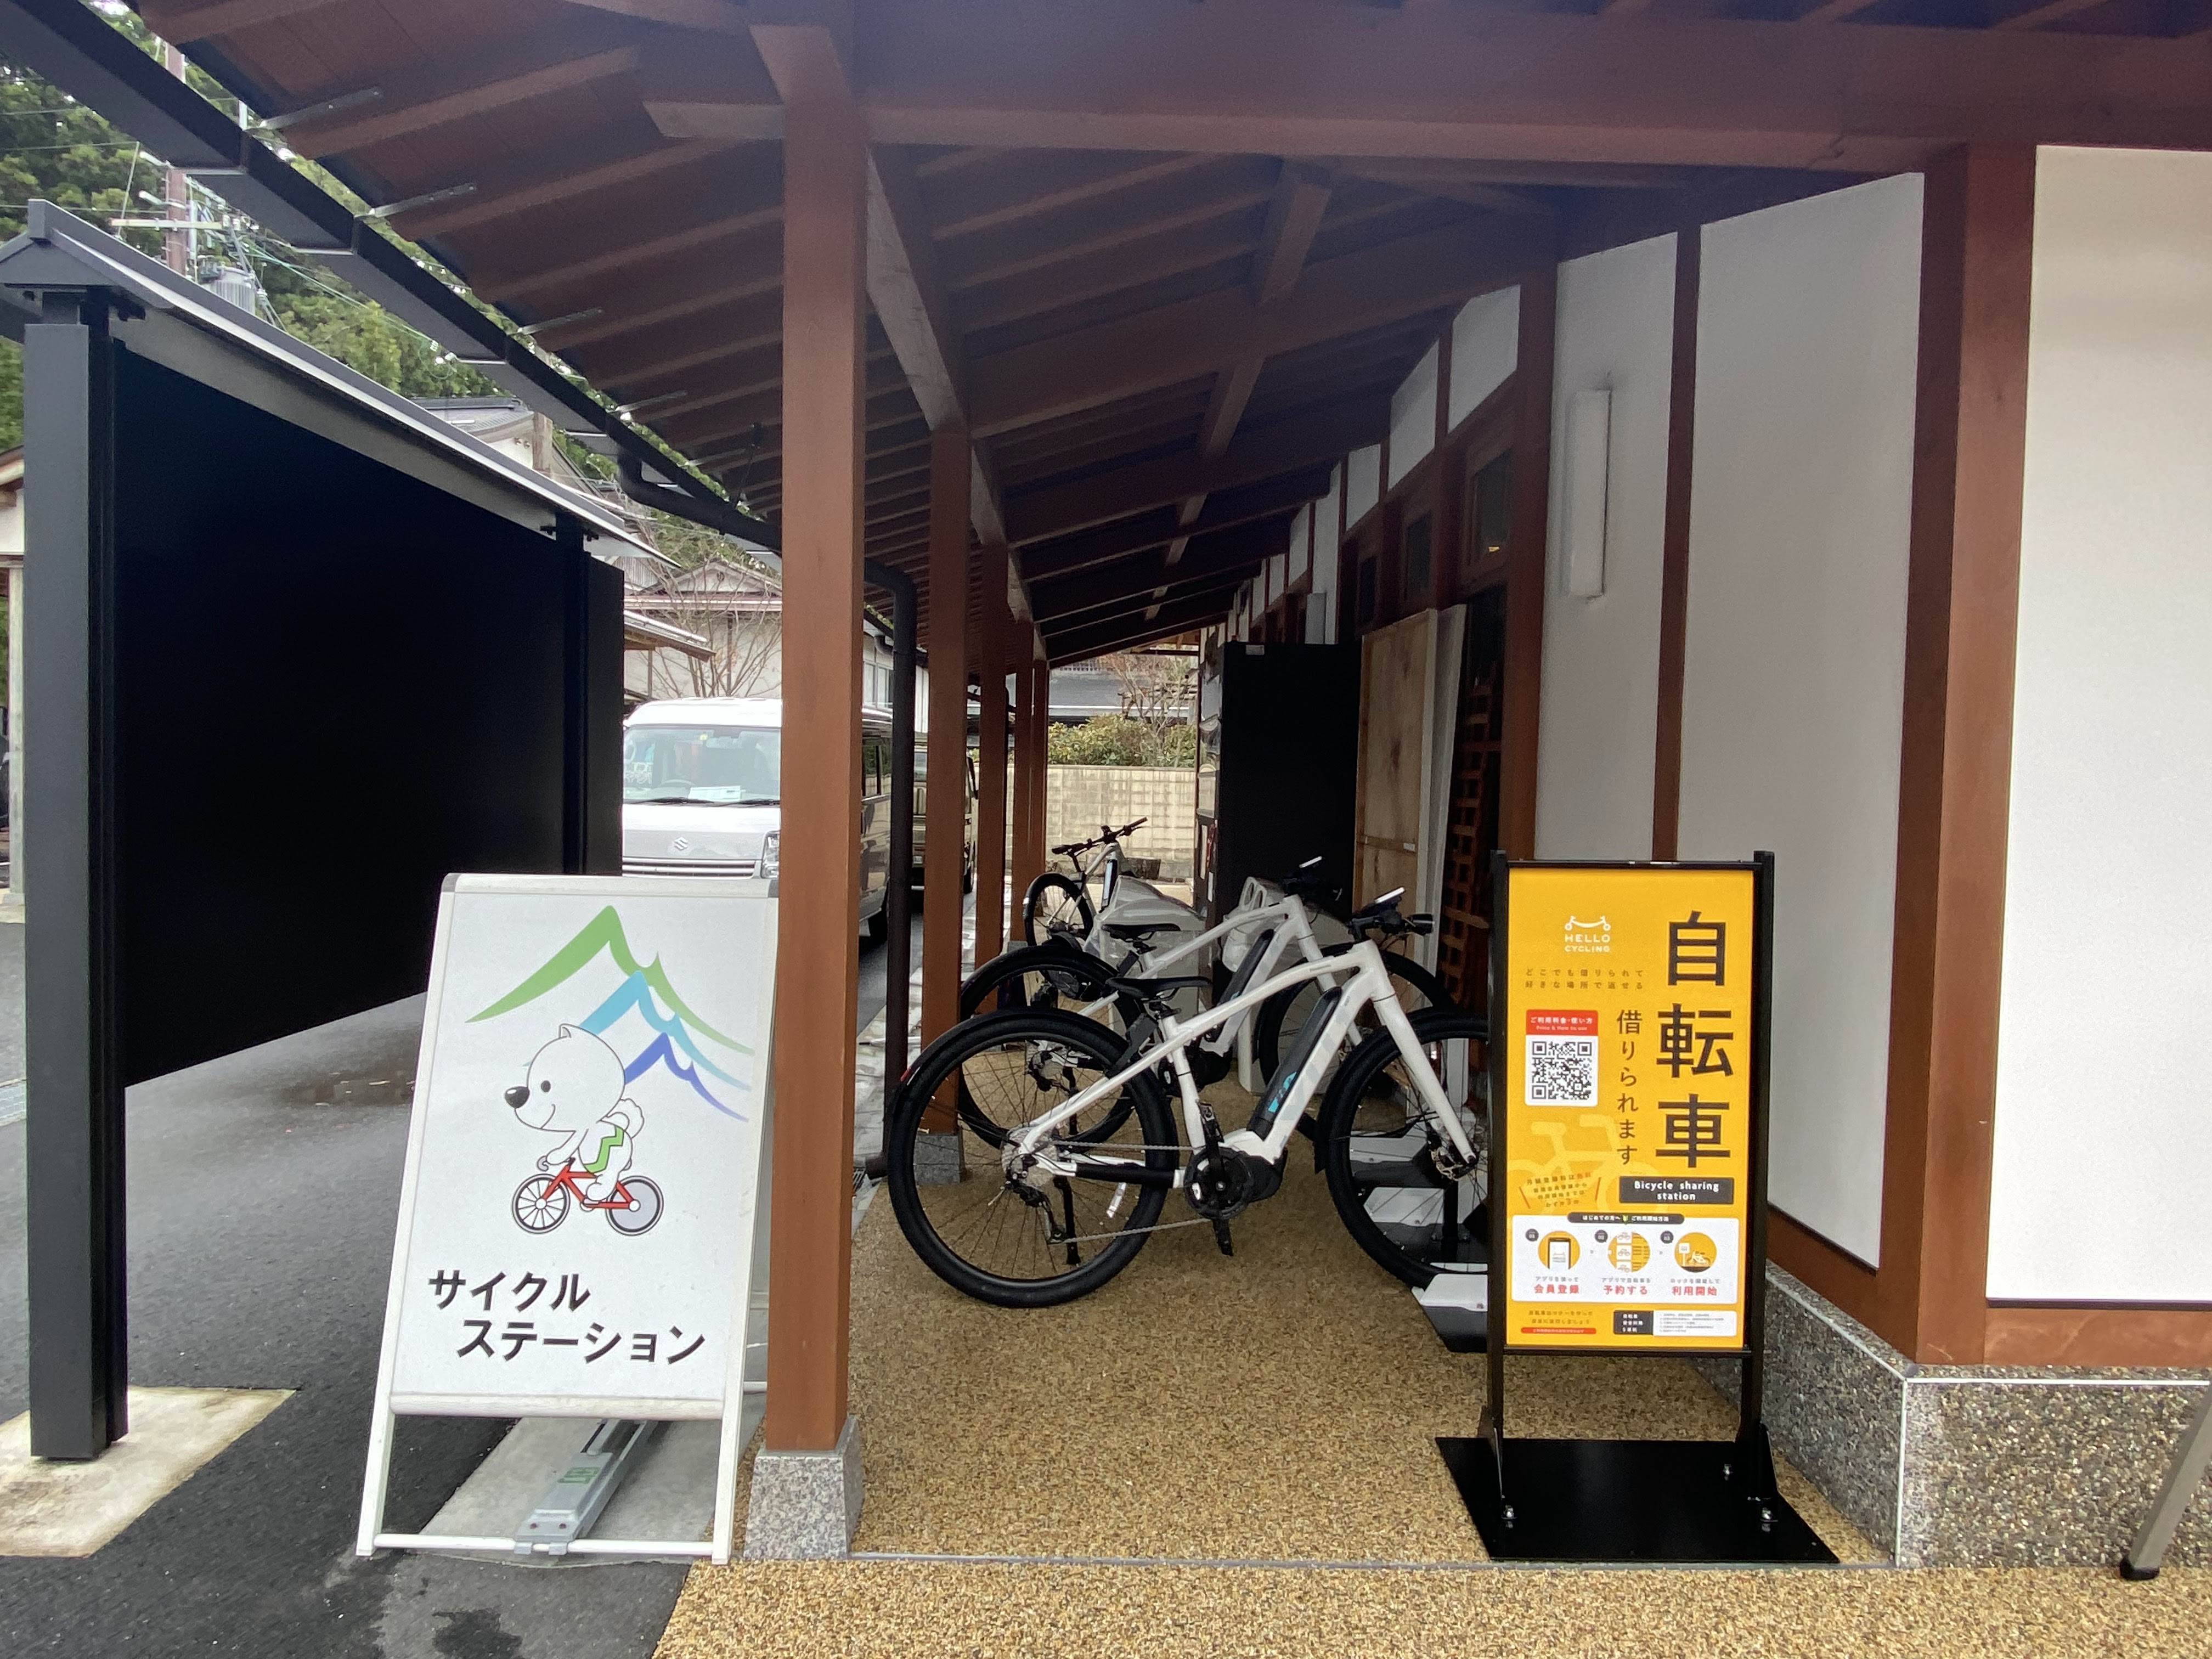 高野山観光情報センター(e-bike専用) (HELLO CYCLING ポート) image